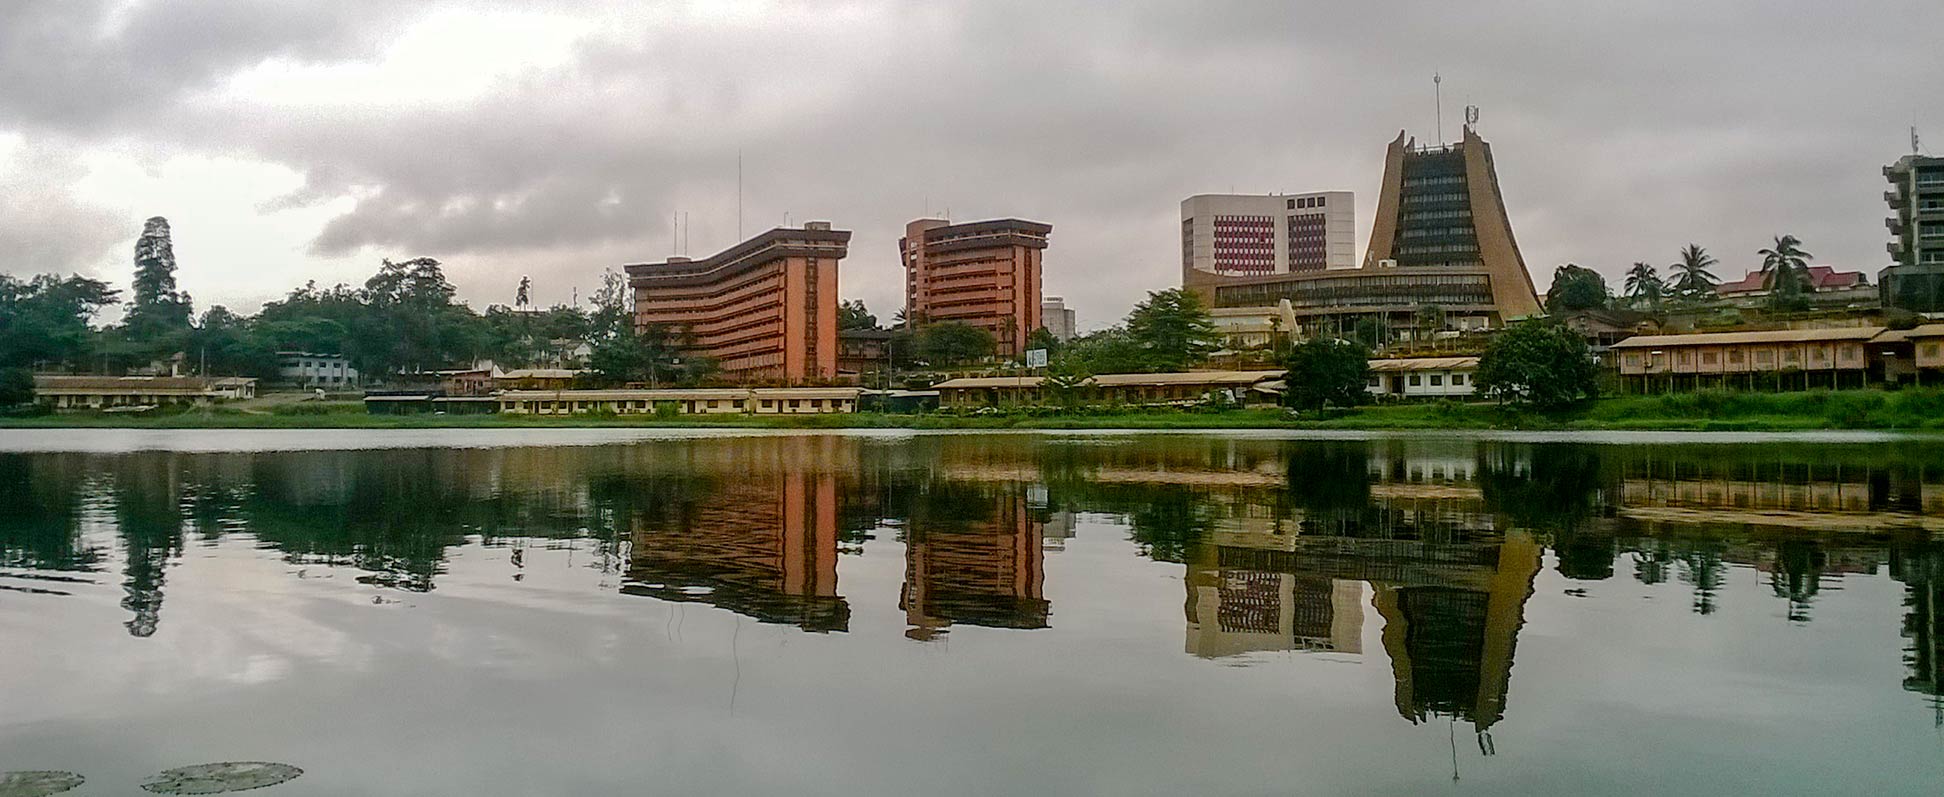 Municipal Lake in Yaoundé city center